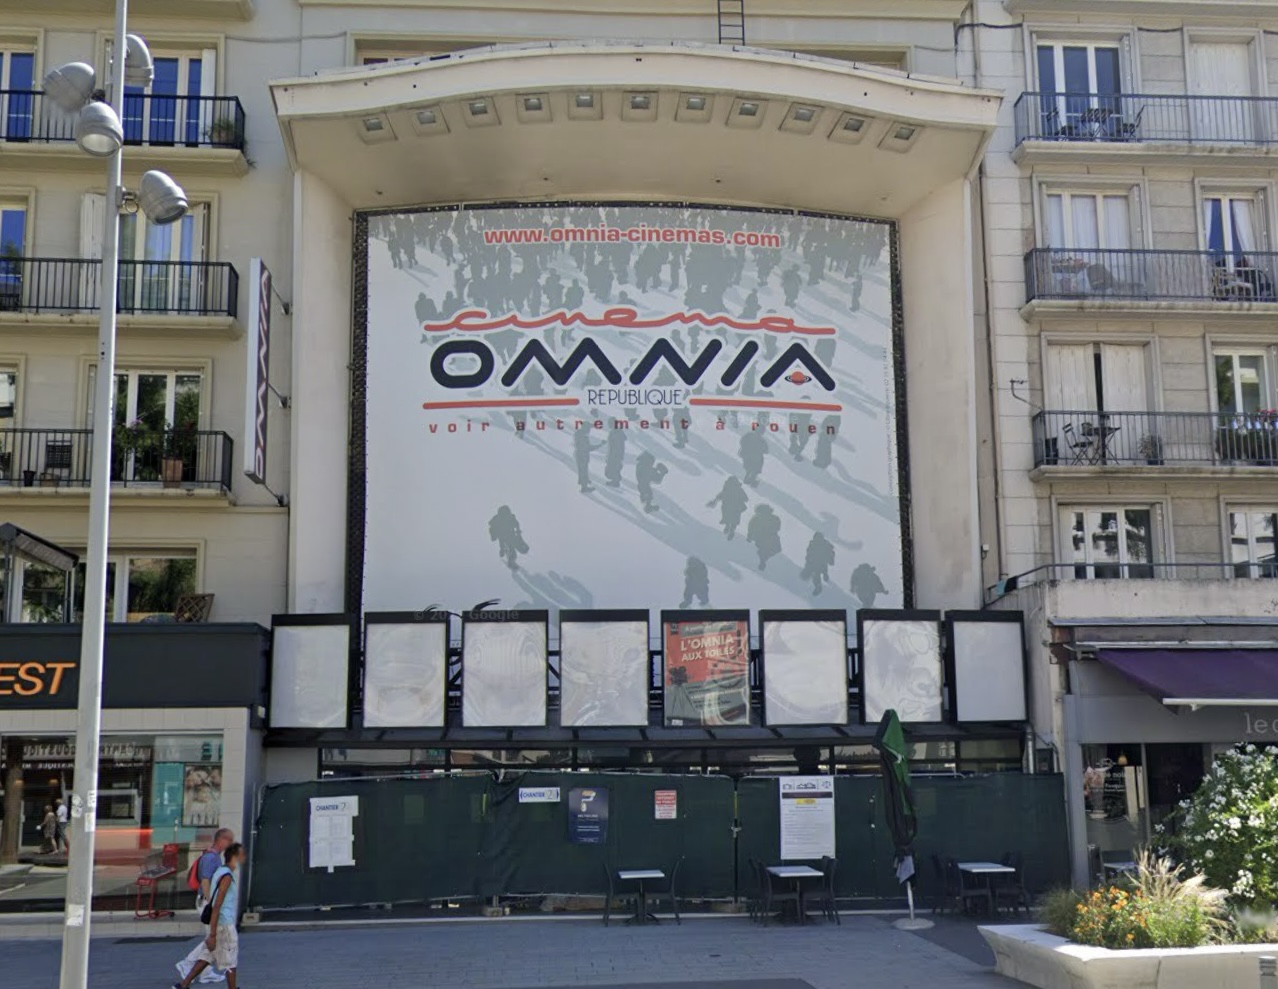 Les huit salles du cinéma Omnia, rue de la République à Rouen, ont été évacuées dans la soirée d’hier mardi - illustration